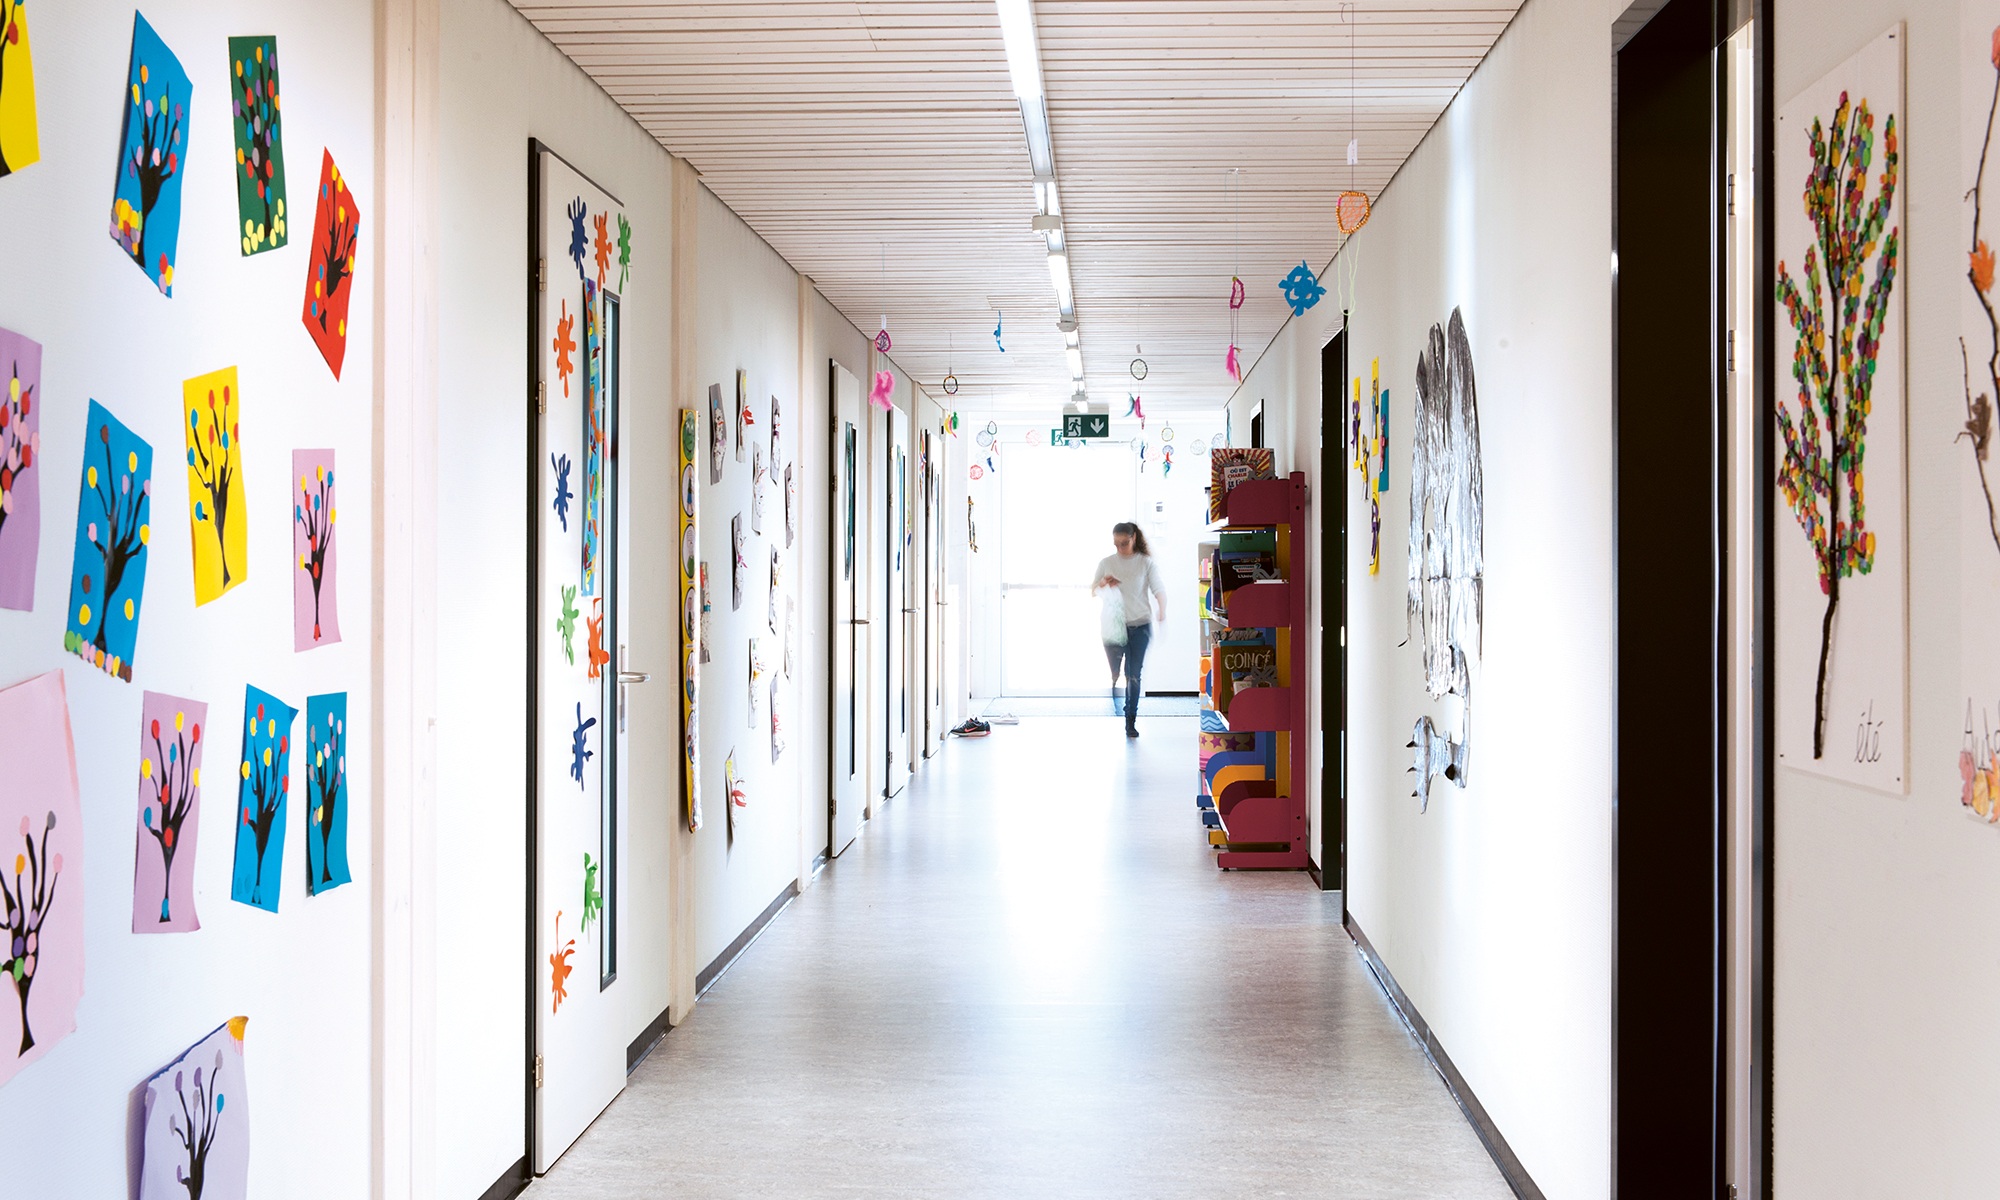 Des couloirs larges et lumineux canalisent les flux d’élèves